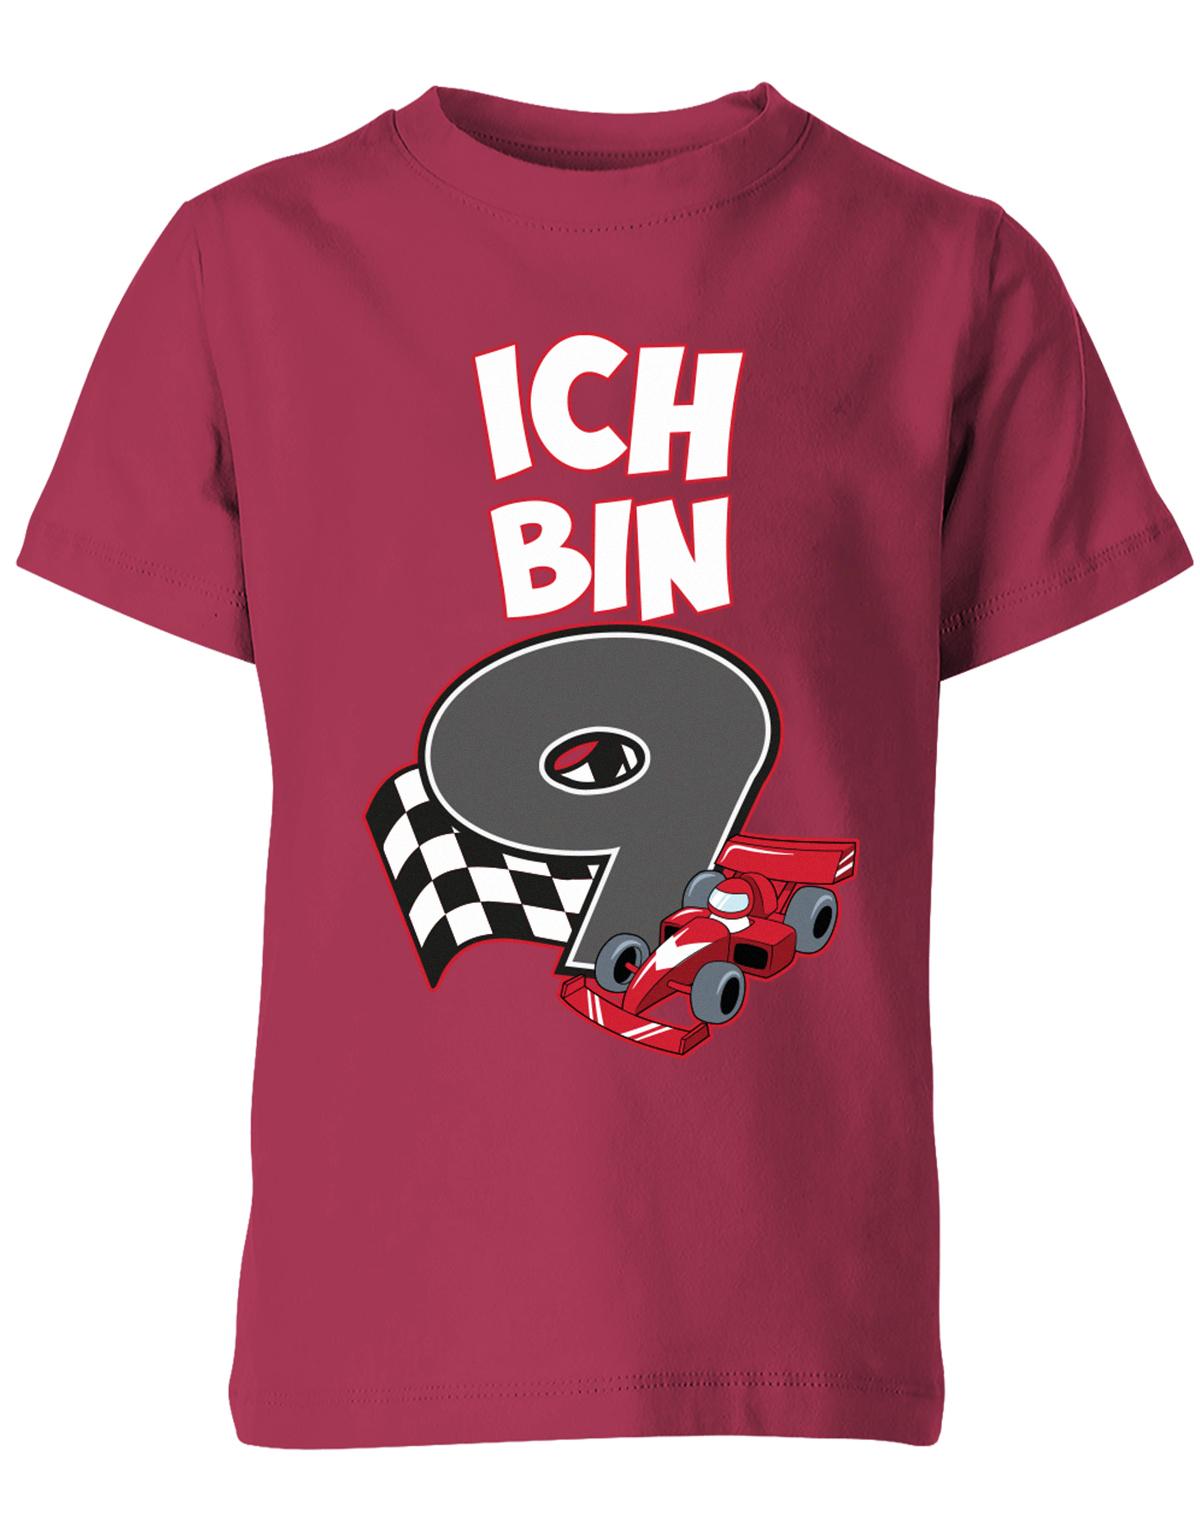 ich-bin-9-autorennen-rennwagen-geburtstag-rennfahrer-kinder-shirt-sorbet